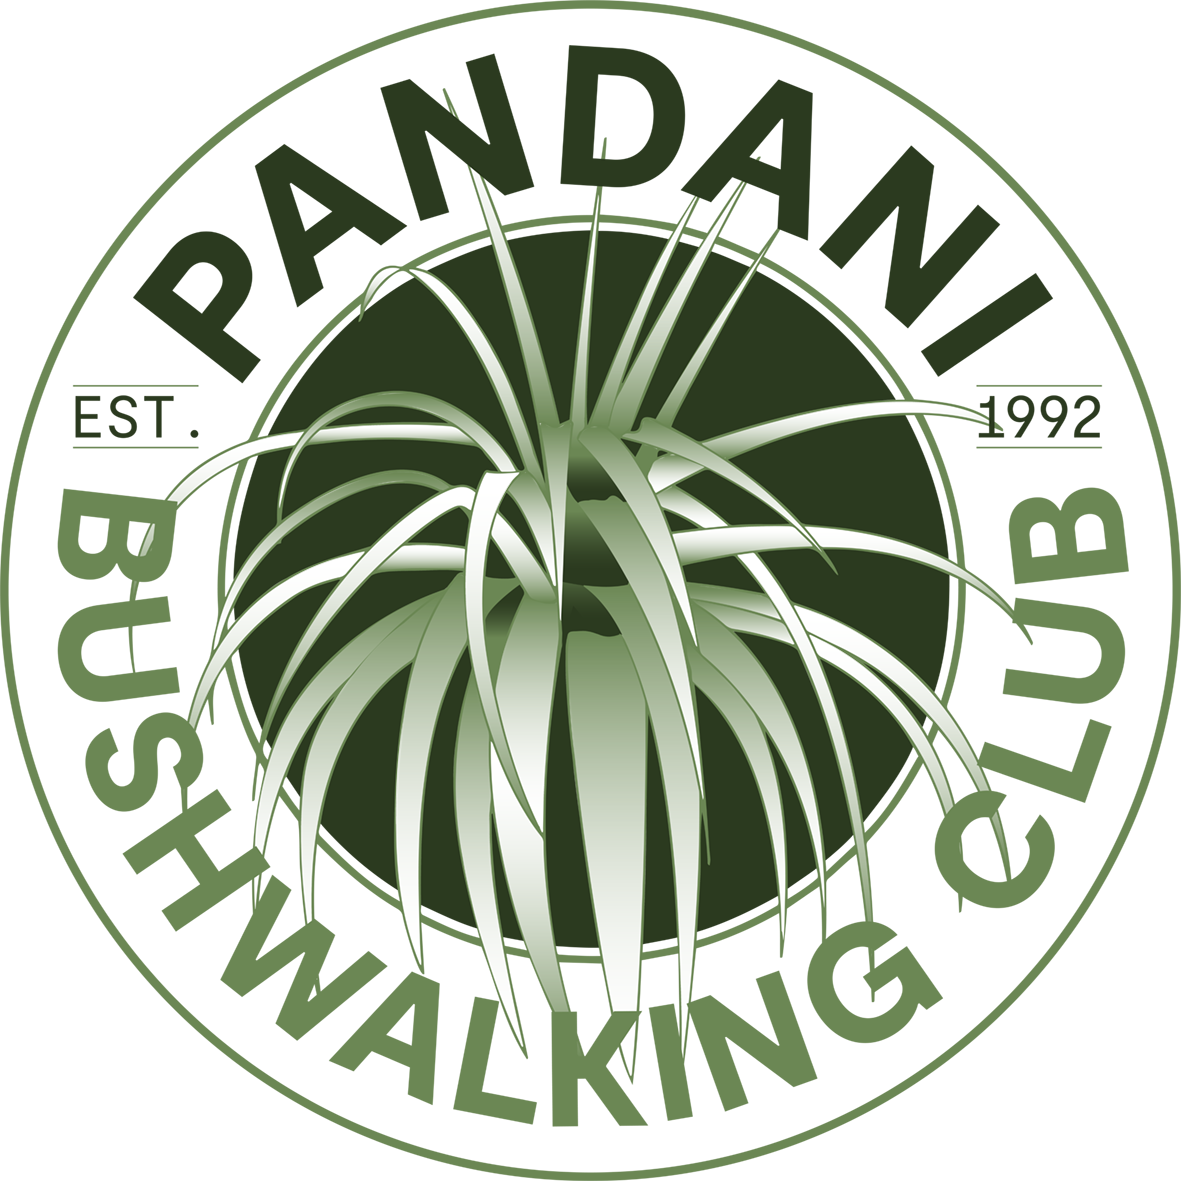 Pandani Bushwalking Club